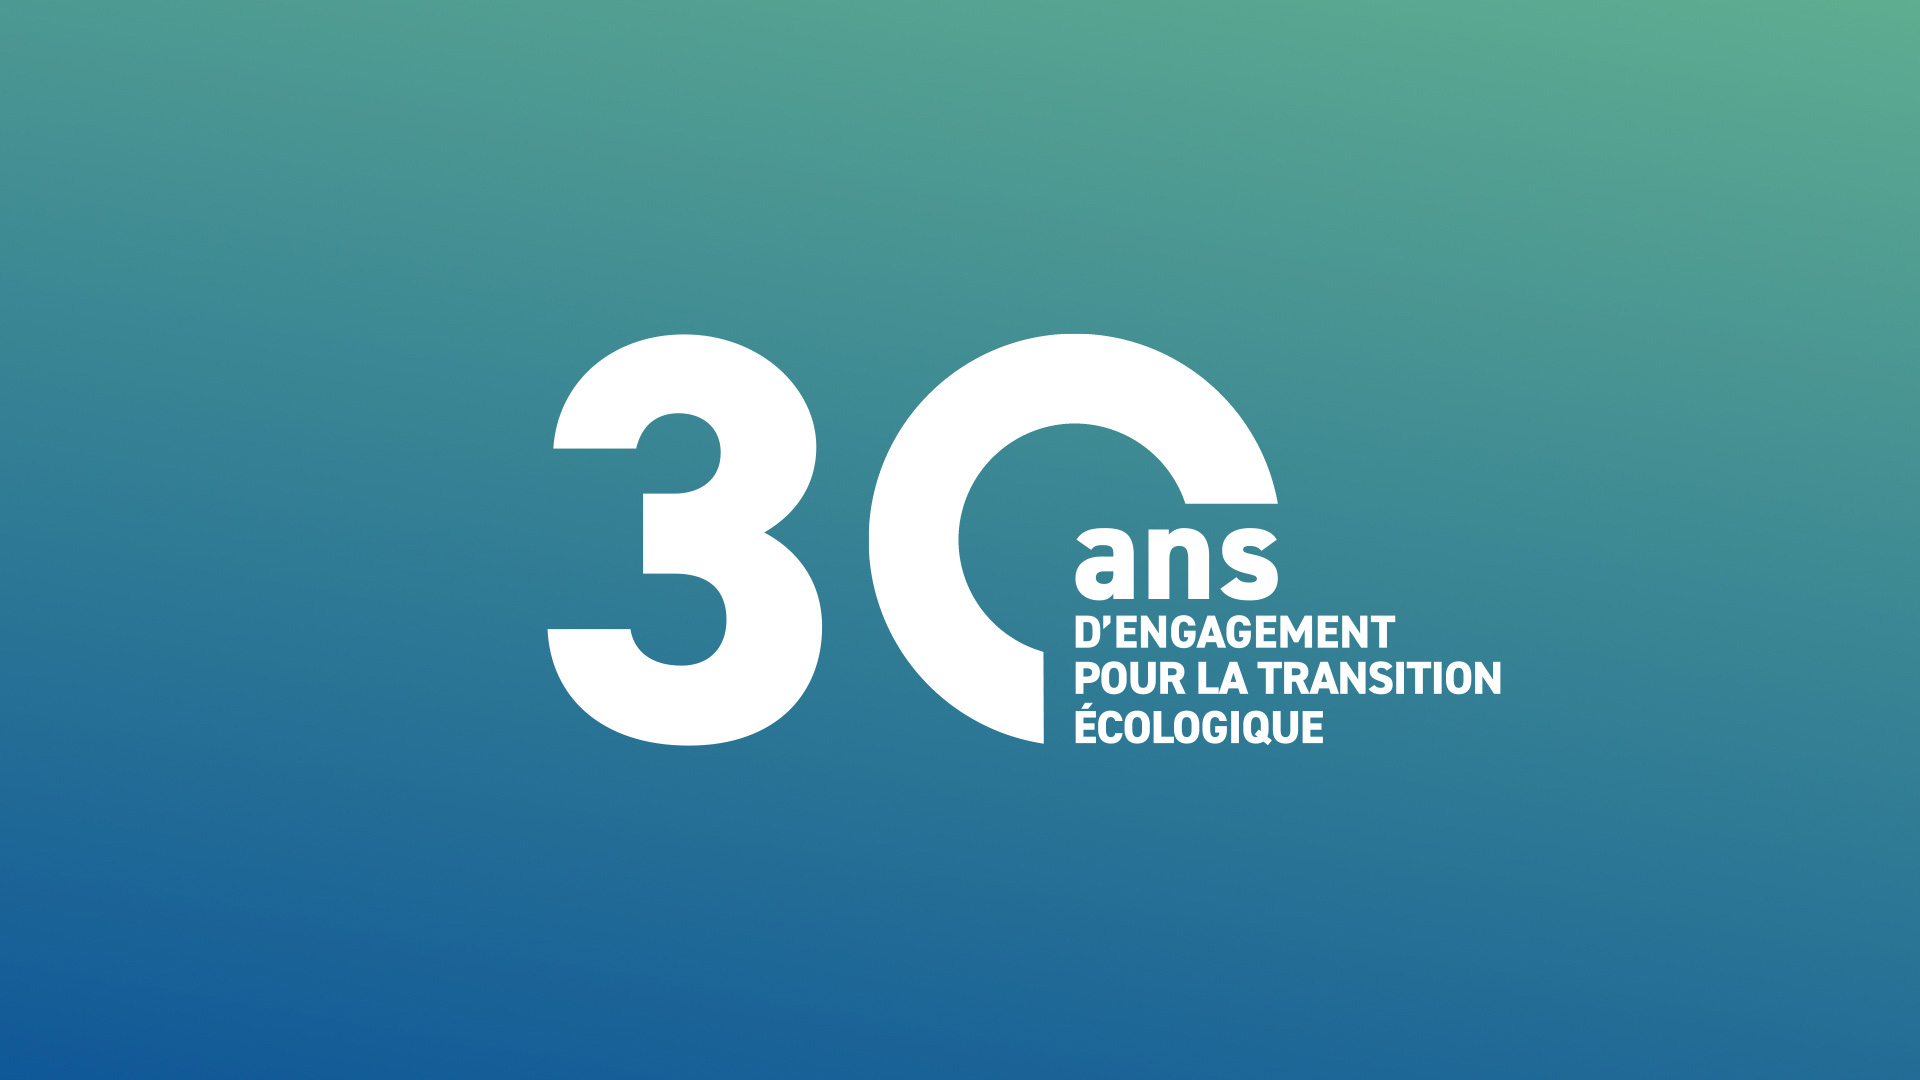 ADEME projet motion design 30 ans d'engagement pour la transition écologique